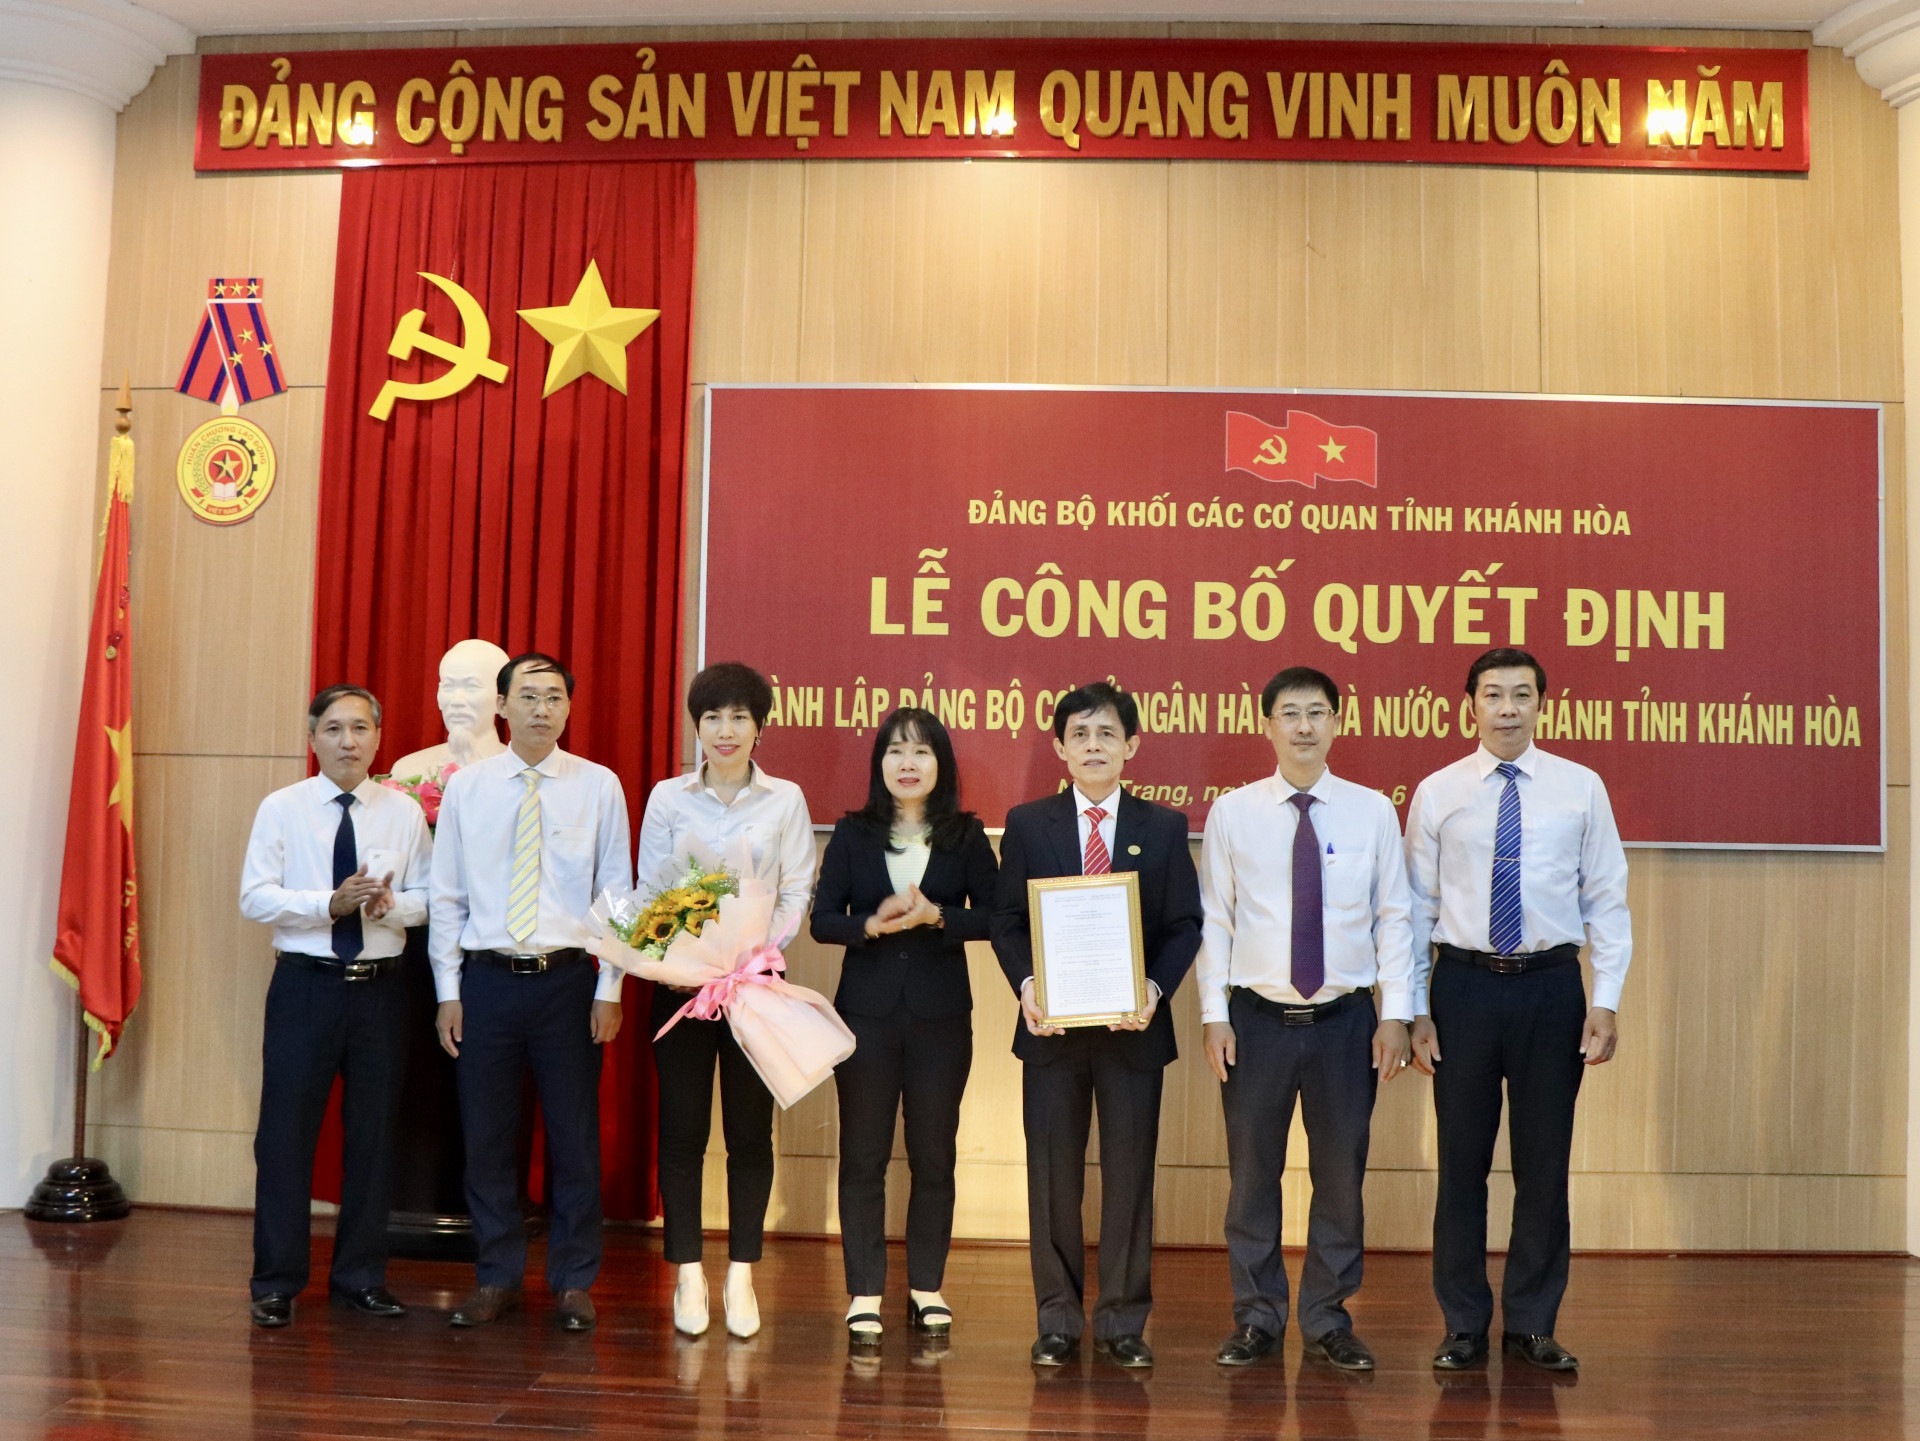 Lãnh đạo Đảng ủy Khối các cơ quan tỉnh trao quyết định thành lập Đảng bộ cơ sở Ngân hàng Nhà nước Chi nhánh tỉnh Khánh Hoà.